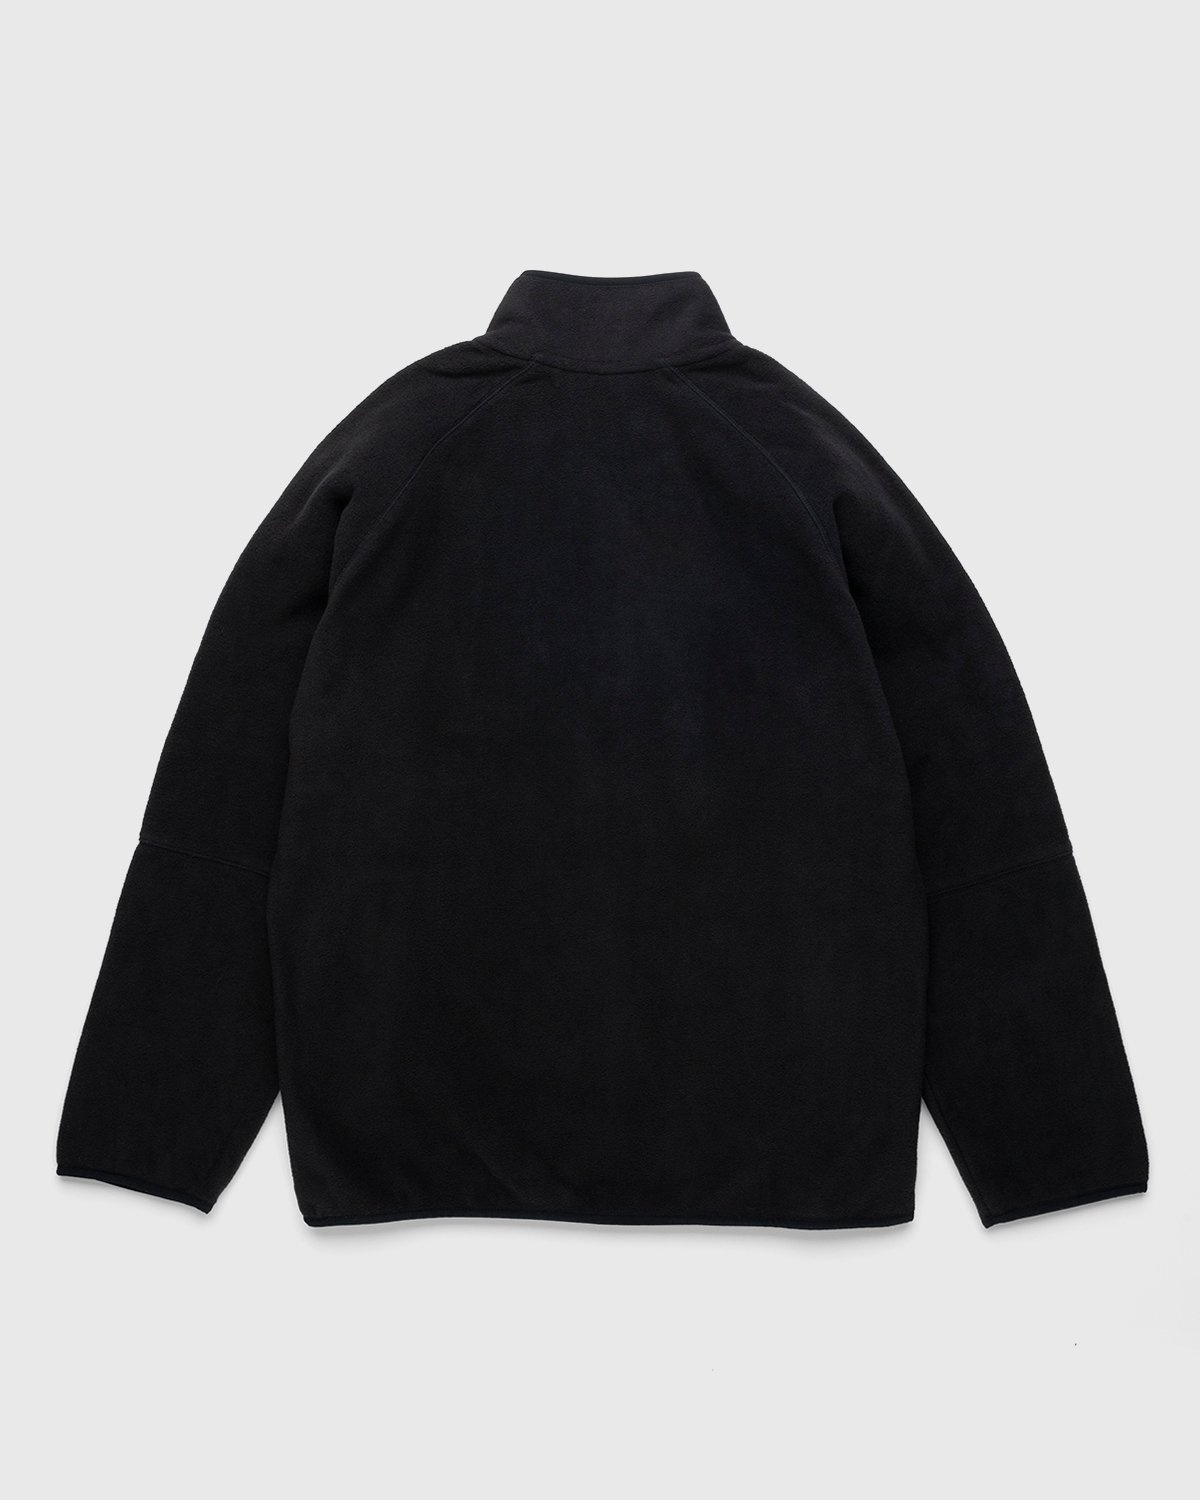 Carhartt WIP – Beaumont Jacket Black - Fleece - Black - Image 2